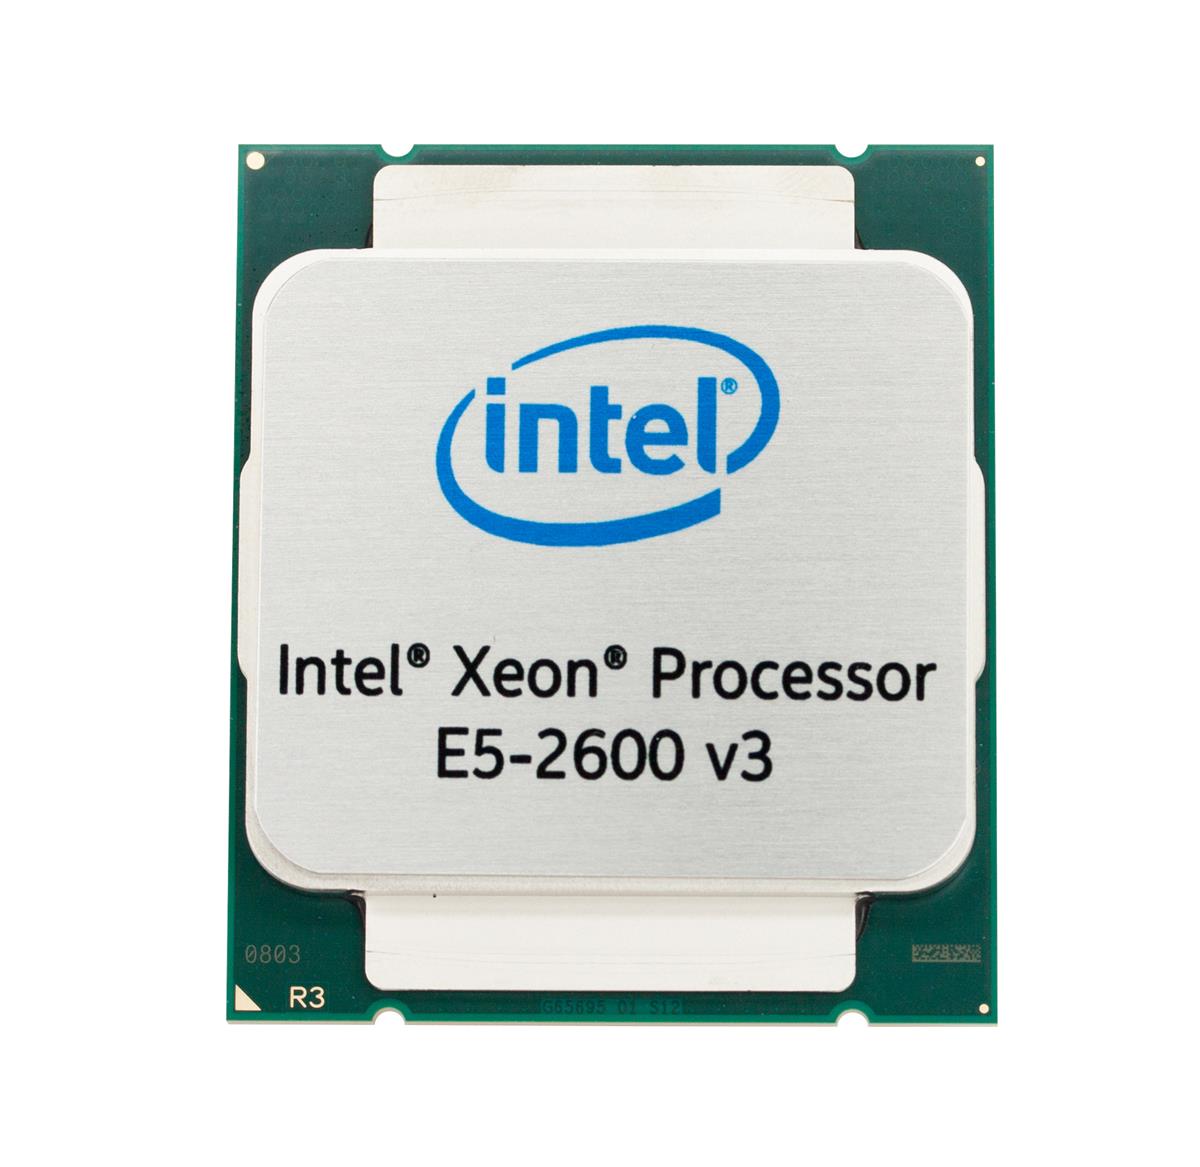 00FM019-01 Lenovo 1.60GHz 6.40GT/s QPI 15MB L3 Cache Intel Xeon E5-2603 v3 6 Core Processor Upgrade